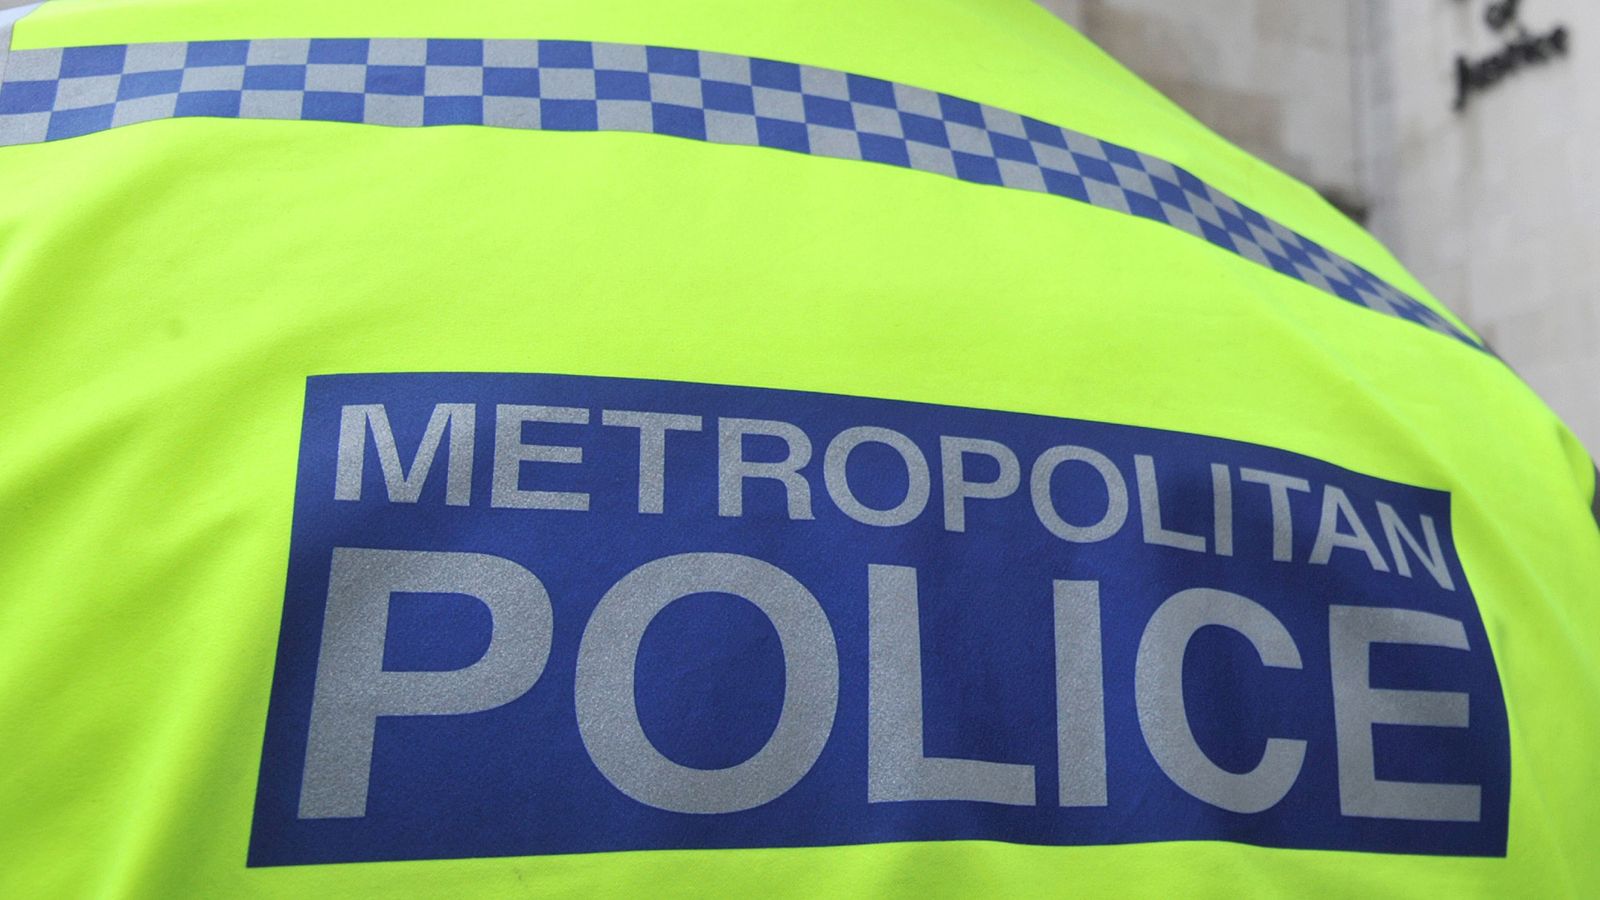 Metropolitan Police firearms officer arrested on suspicion of rape